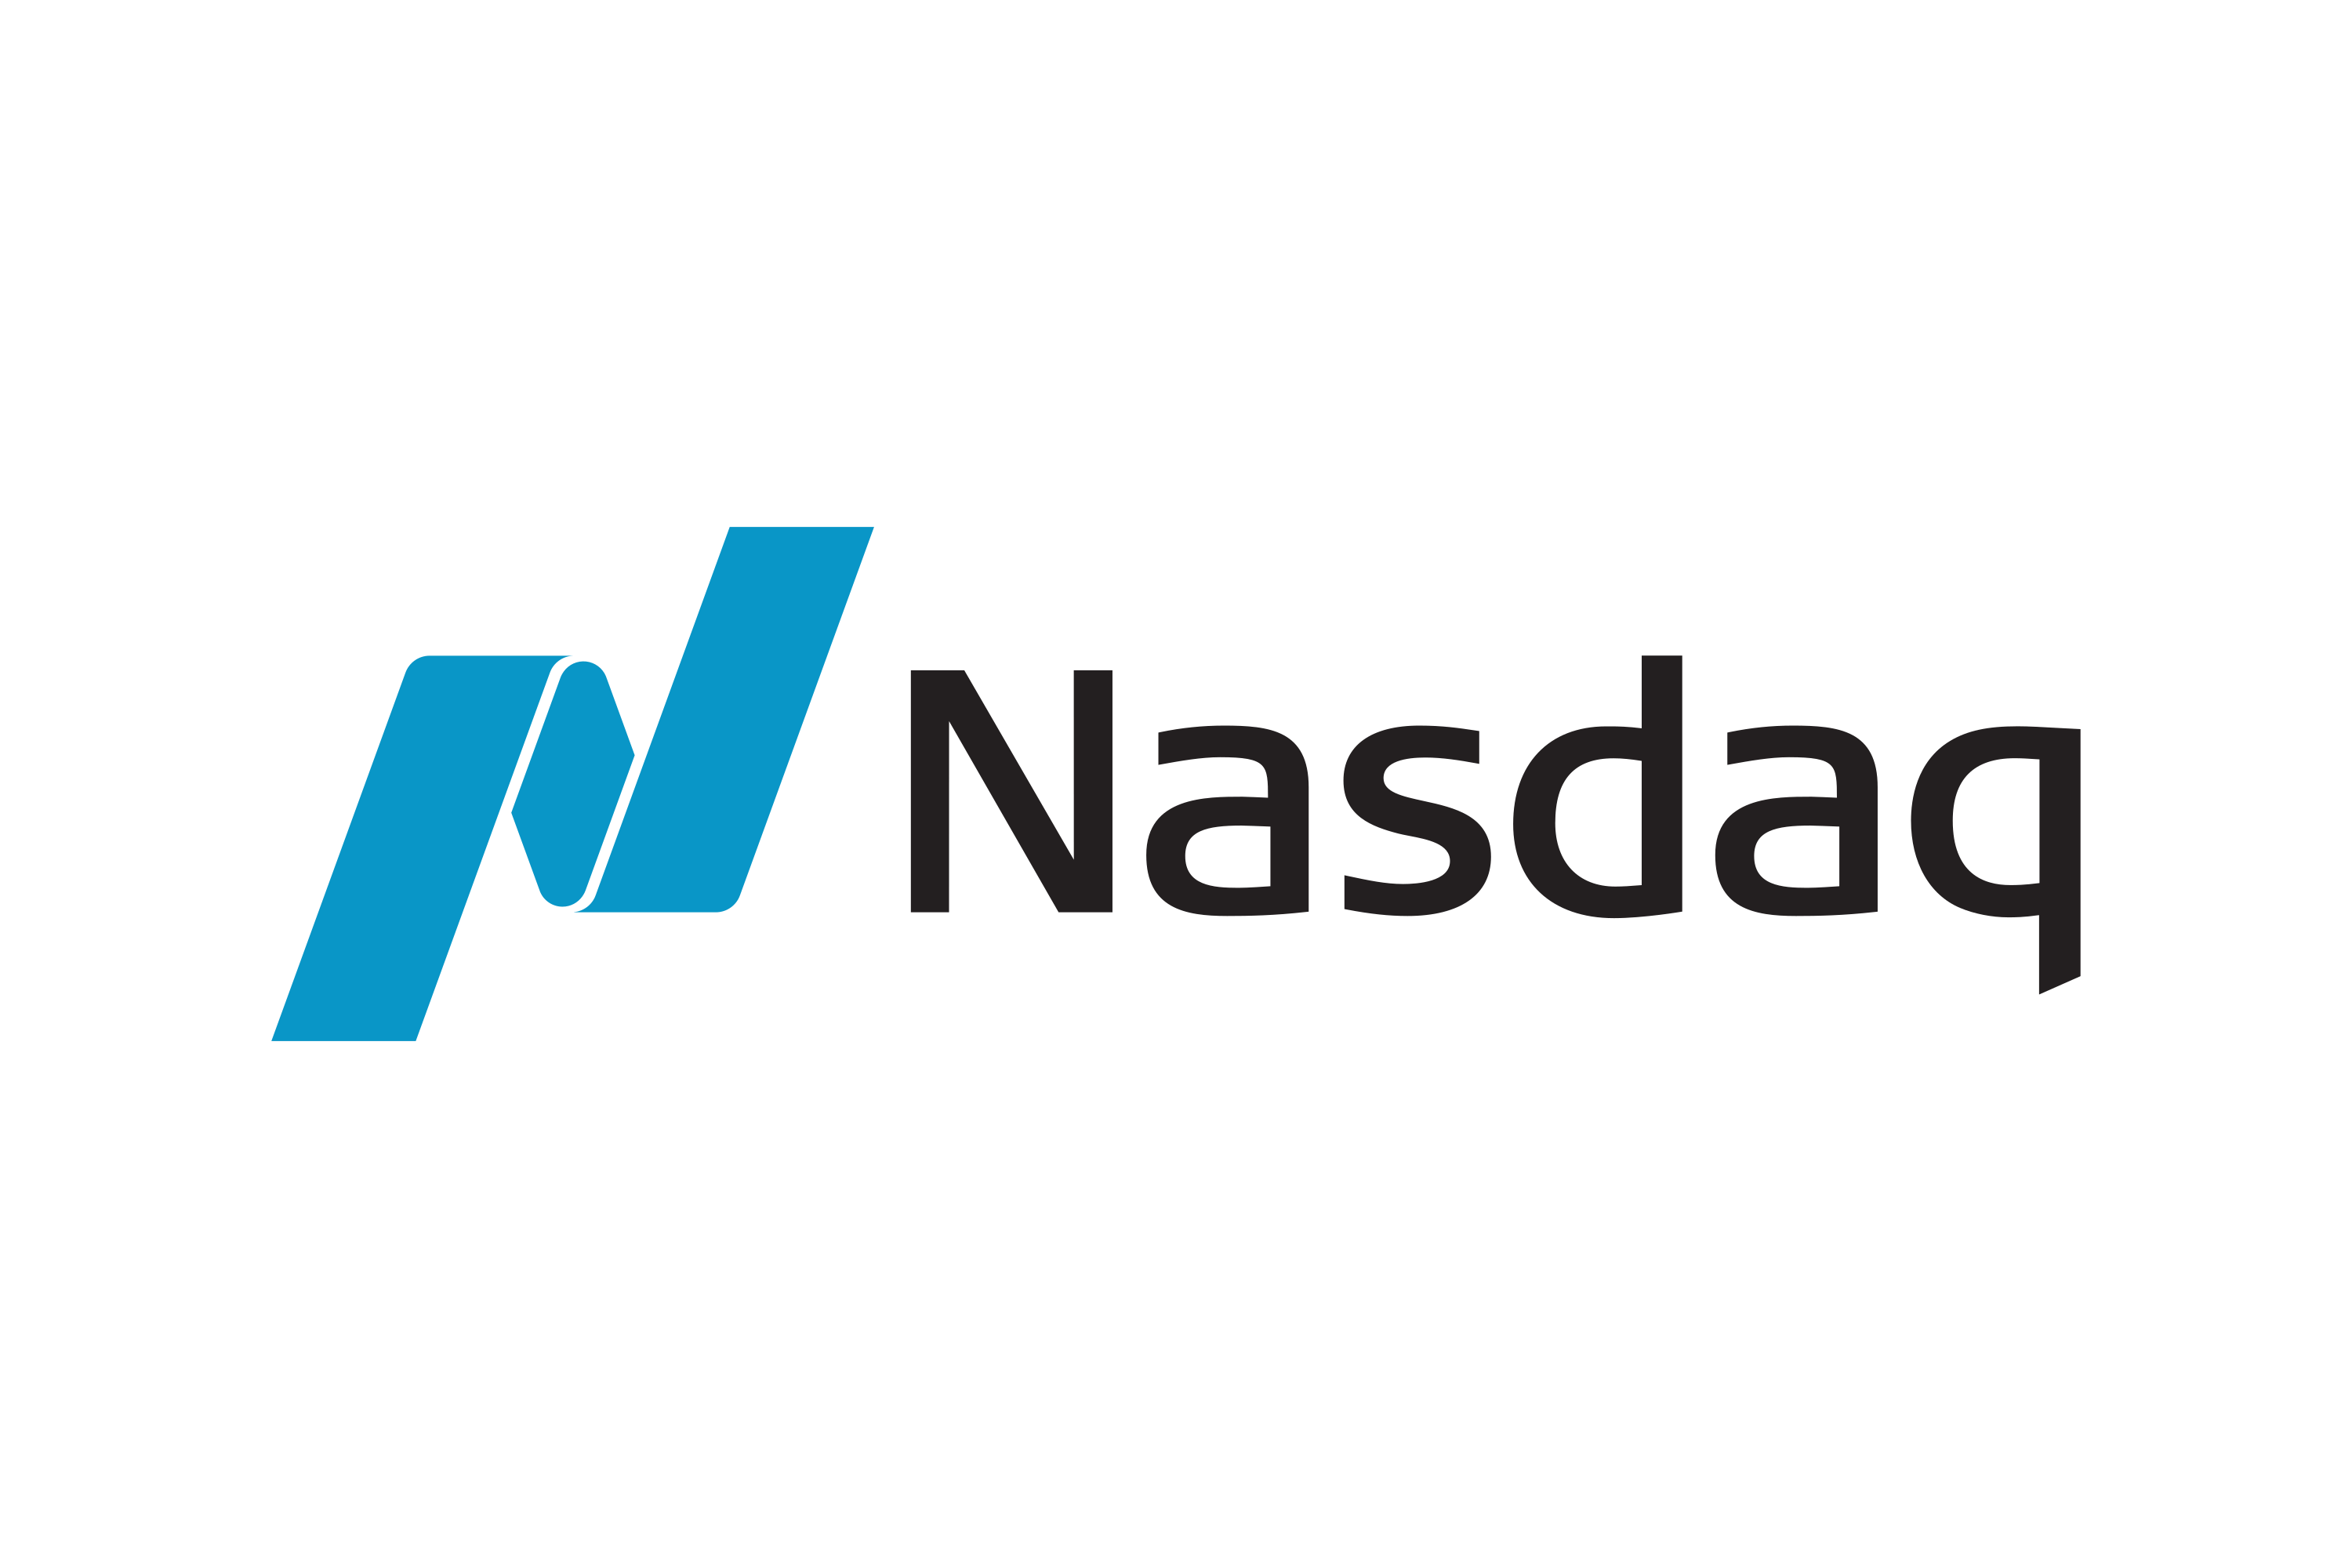 Download NASDAQ Logo in SVG Vector or PNG File Format - Logo.wine